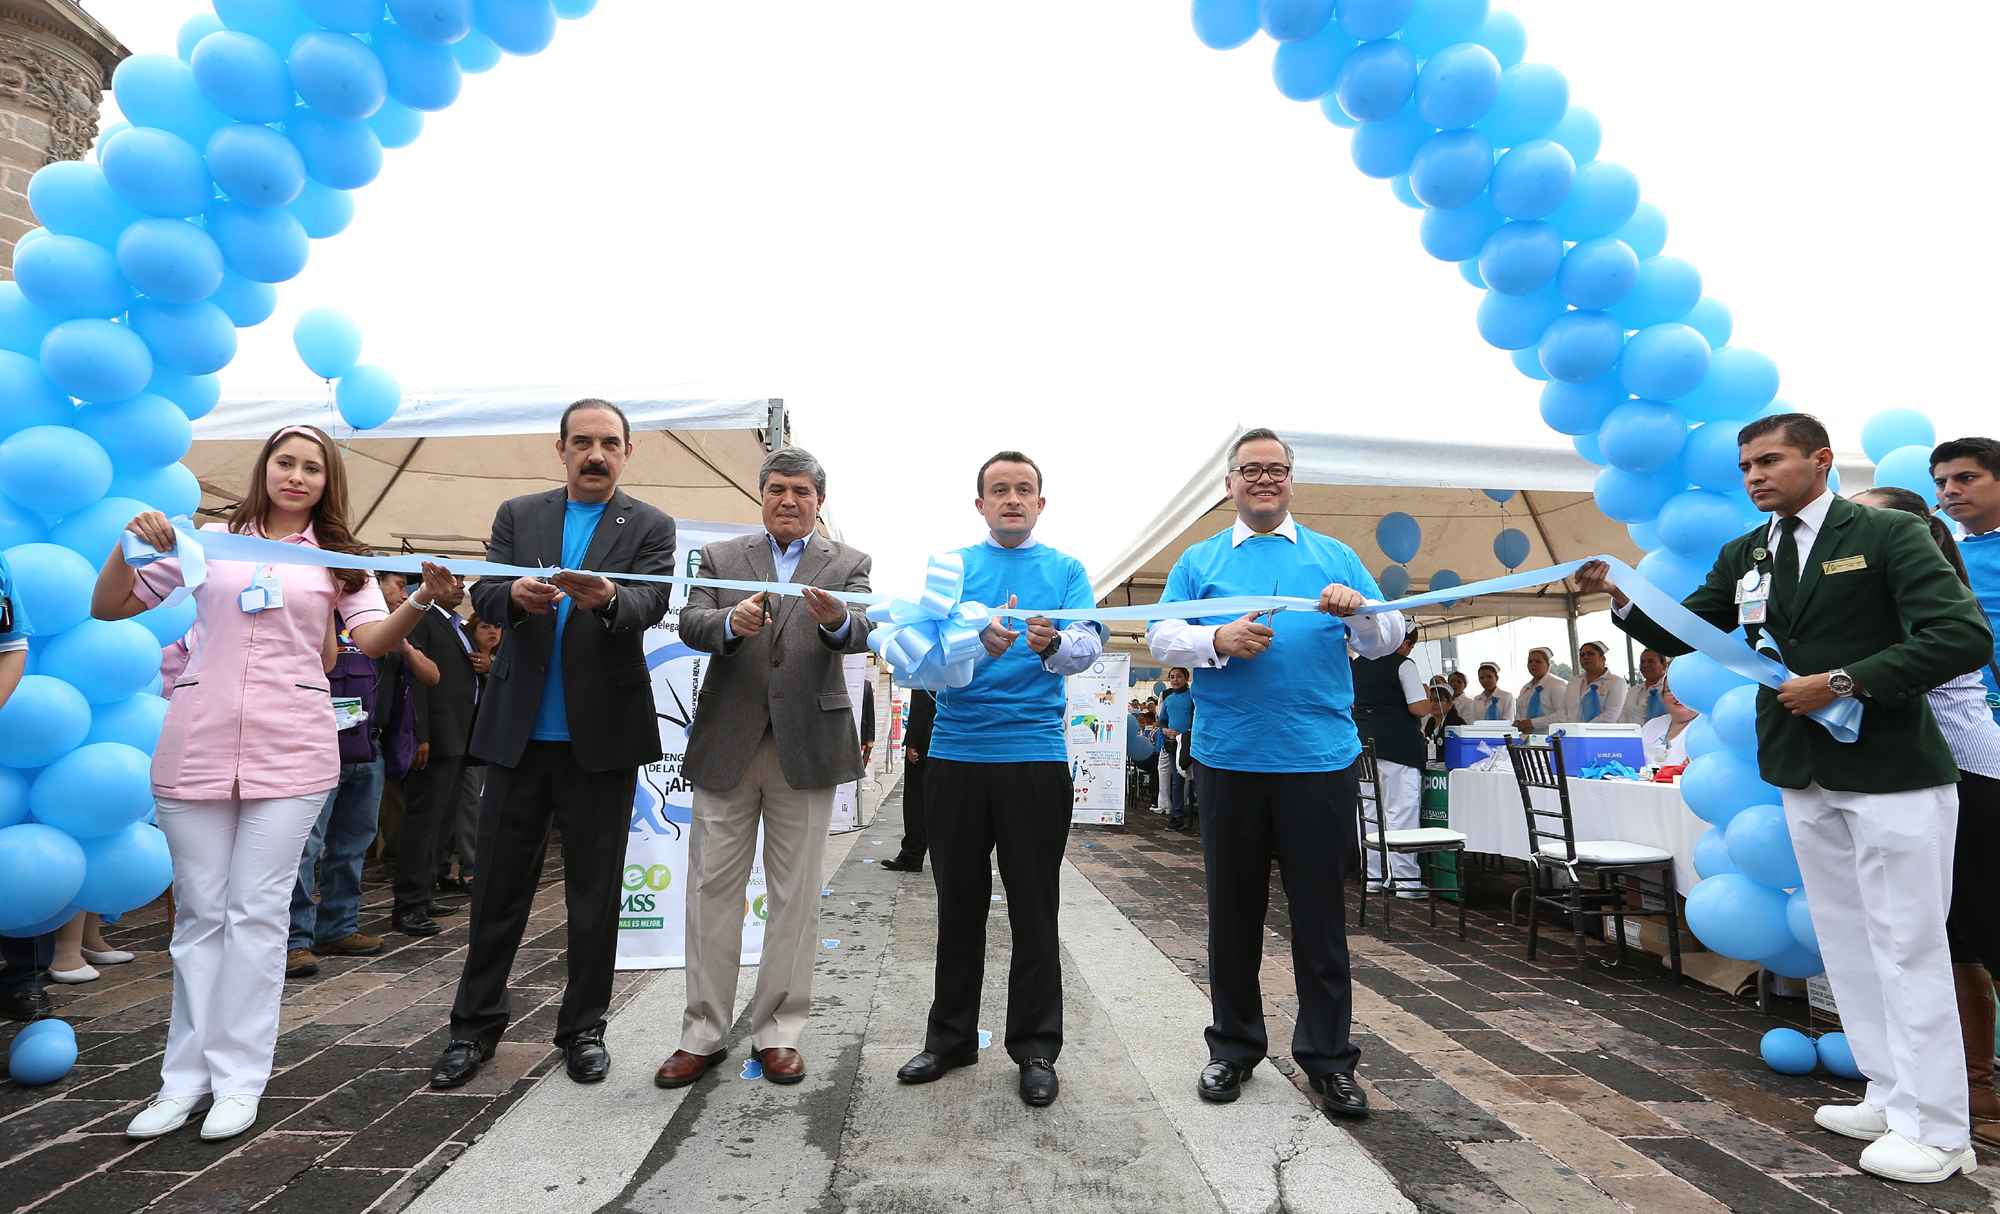 Anuncian construcción de Hospital del IMSS en Nuevo León